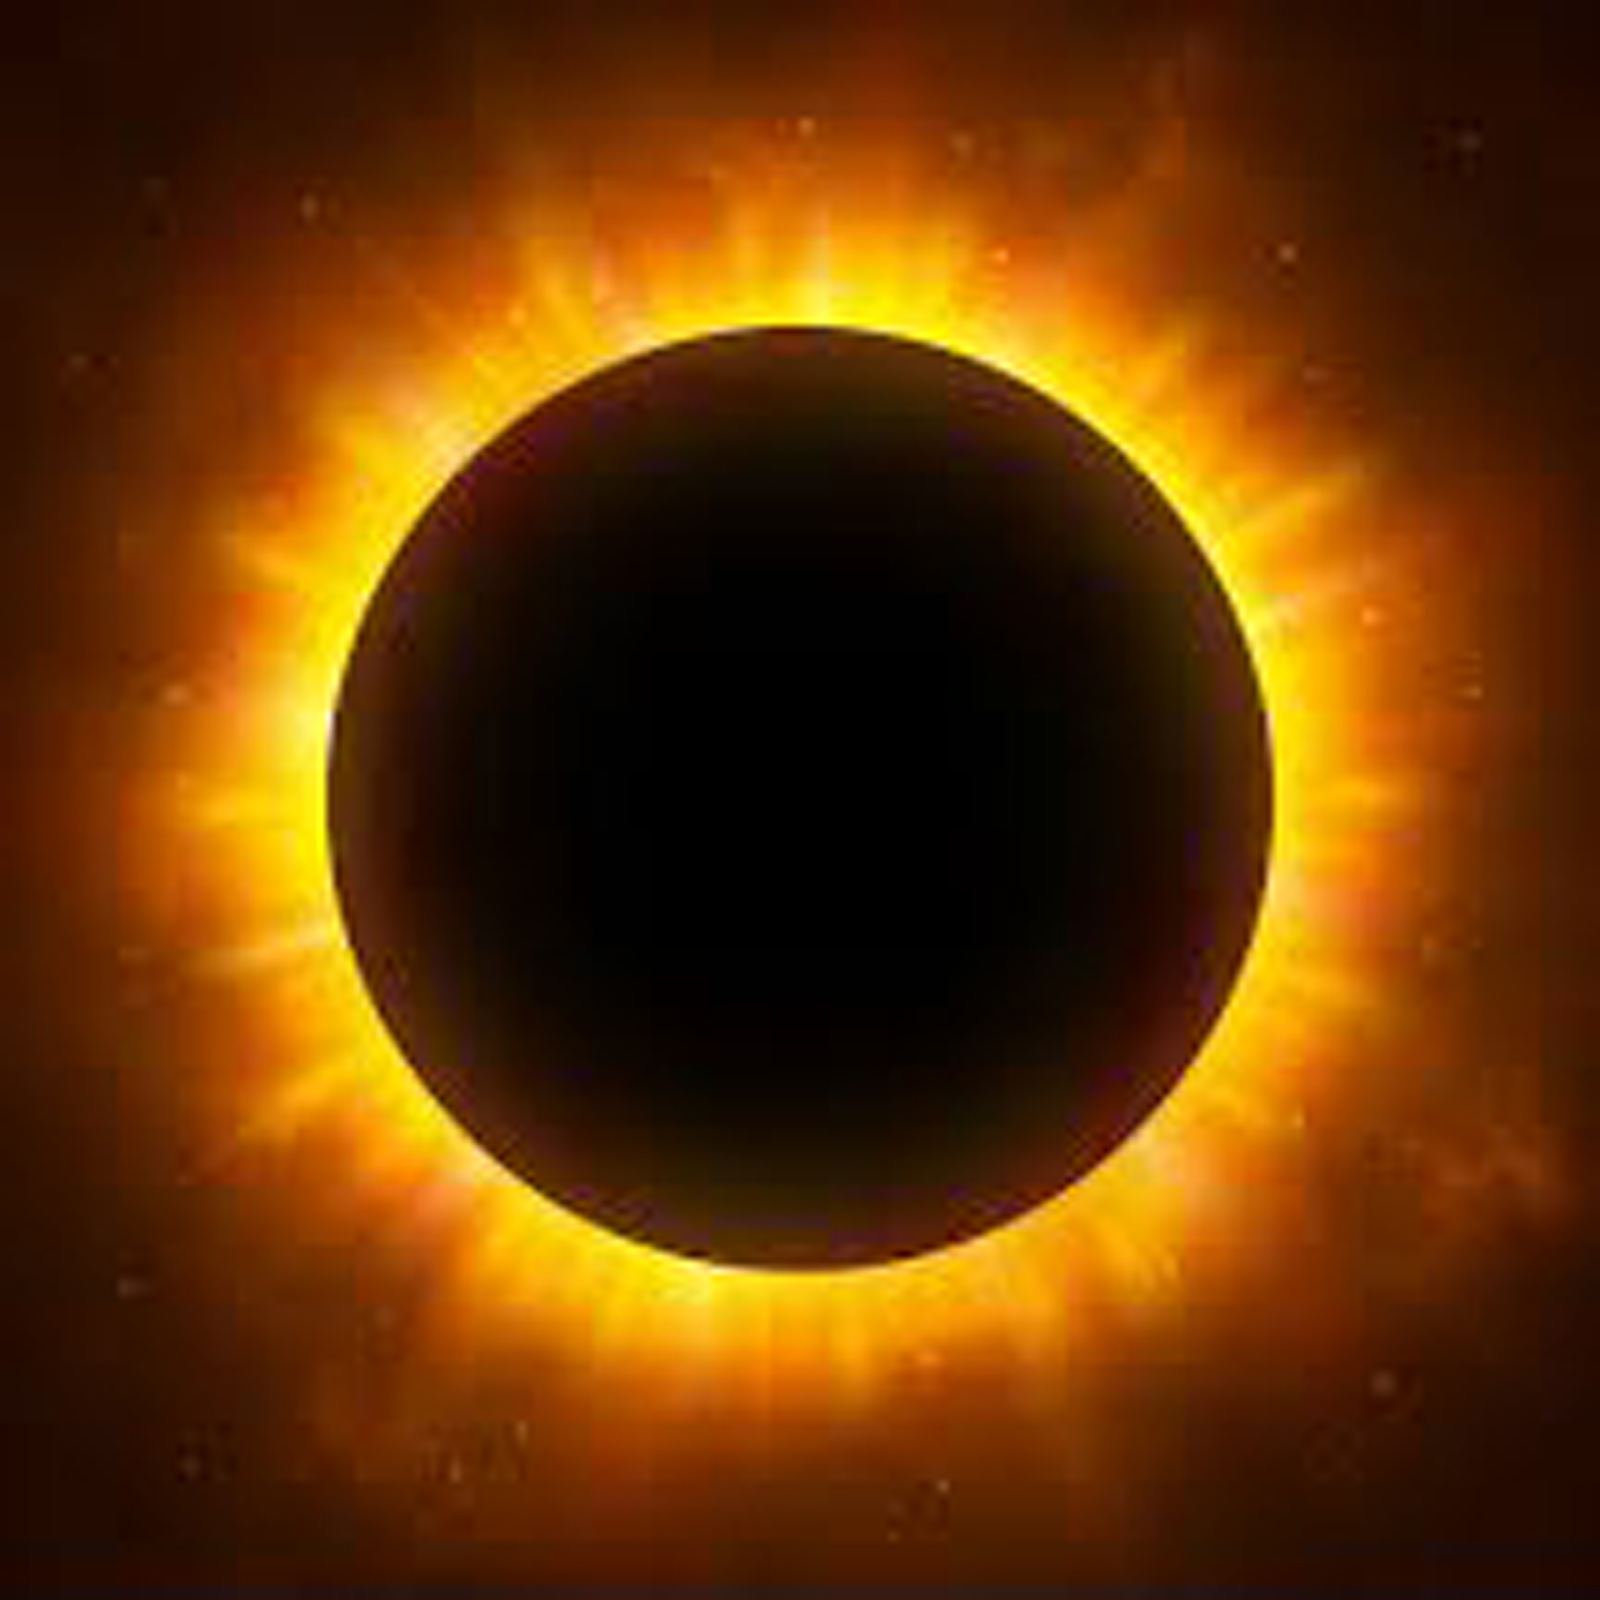 2 солнечная корона. Solar Eclipse Corona. Солнечное затмение Солнечная корона. Затмение солнца хромосфера. Полное солнечное затмение Солнечная корона.